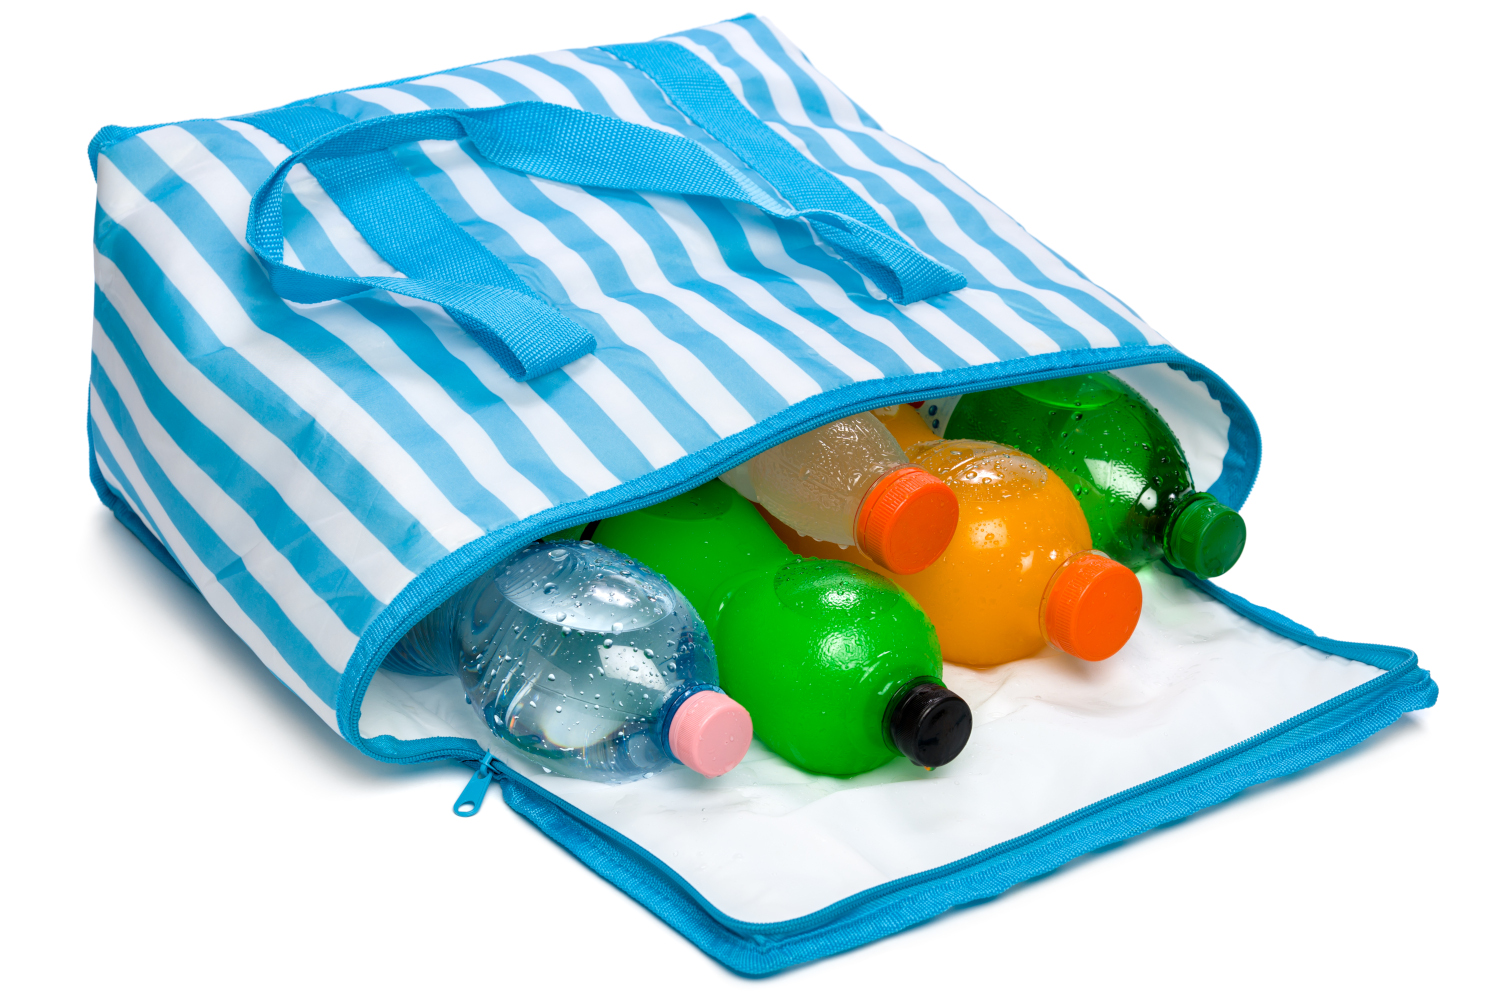 PEARL Reise Kühltasche: Faltbare Mini-Kühltasche, isoliert, wasserdicht und  auslaufsicher, 6 l (Kühltasche faltbar klein)